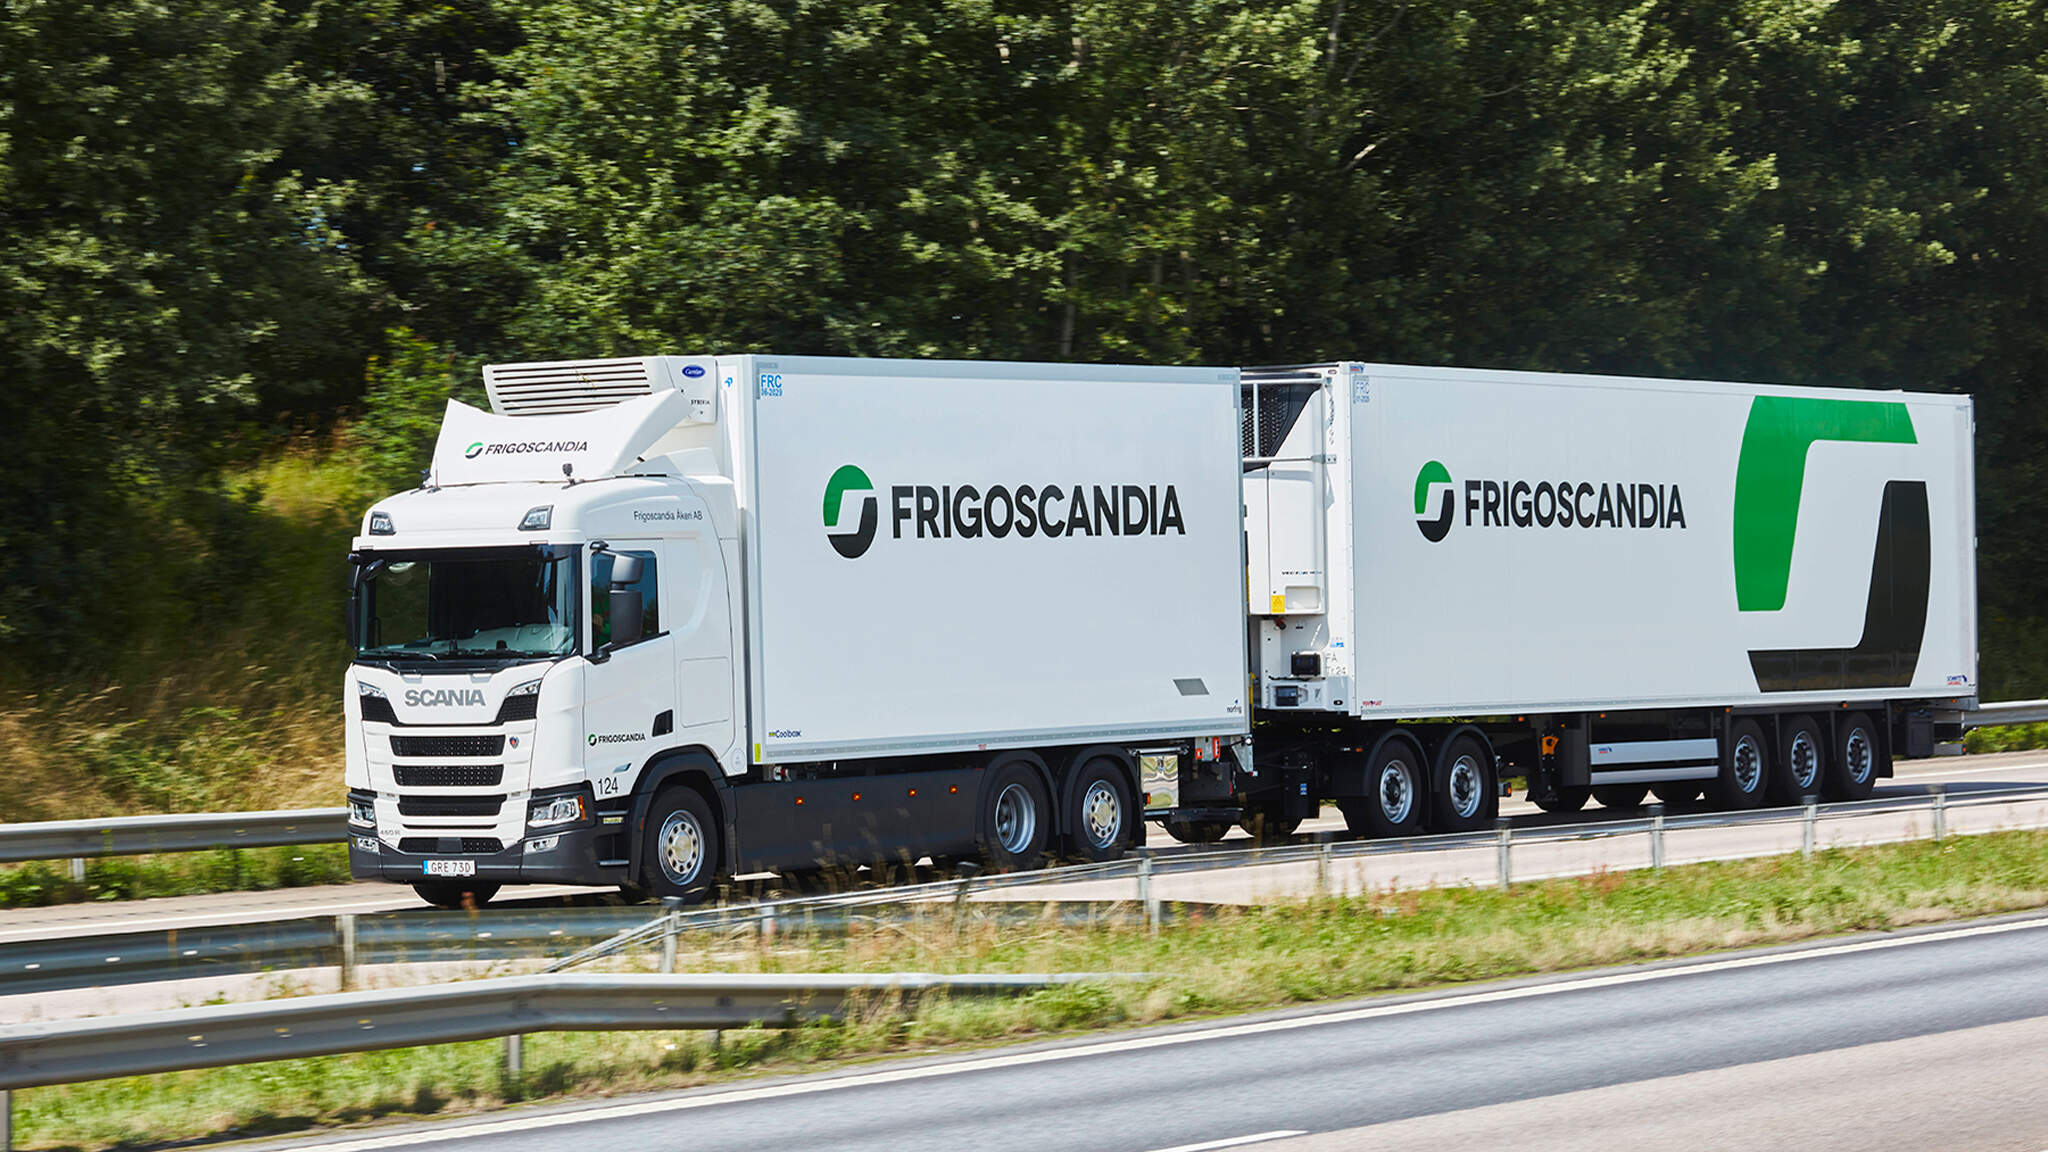 DACHSER posiluje svou síť logistiky potravin v Evropě a povyšuje partnerství se společností Frigoscandia na novou úroveň.